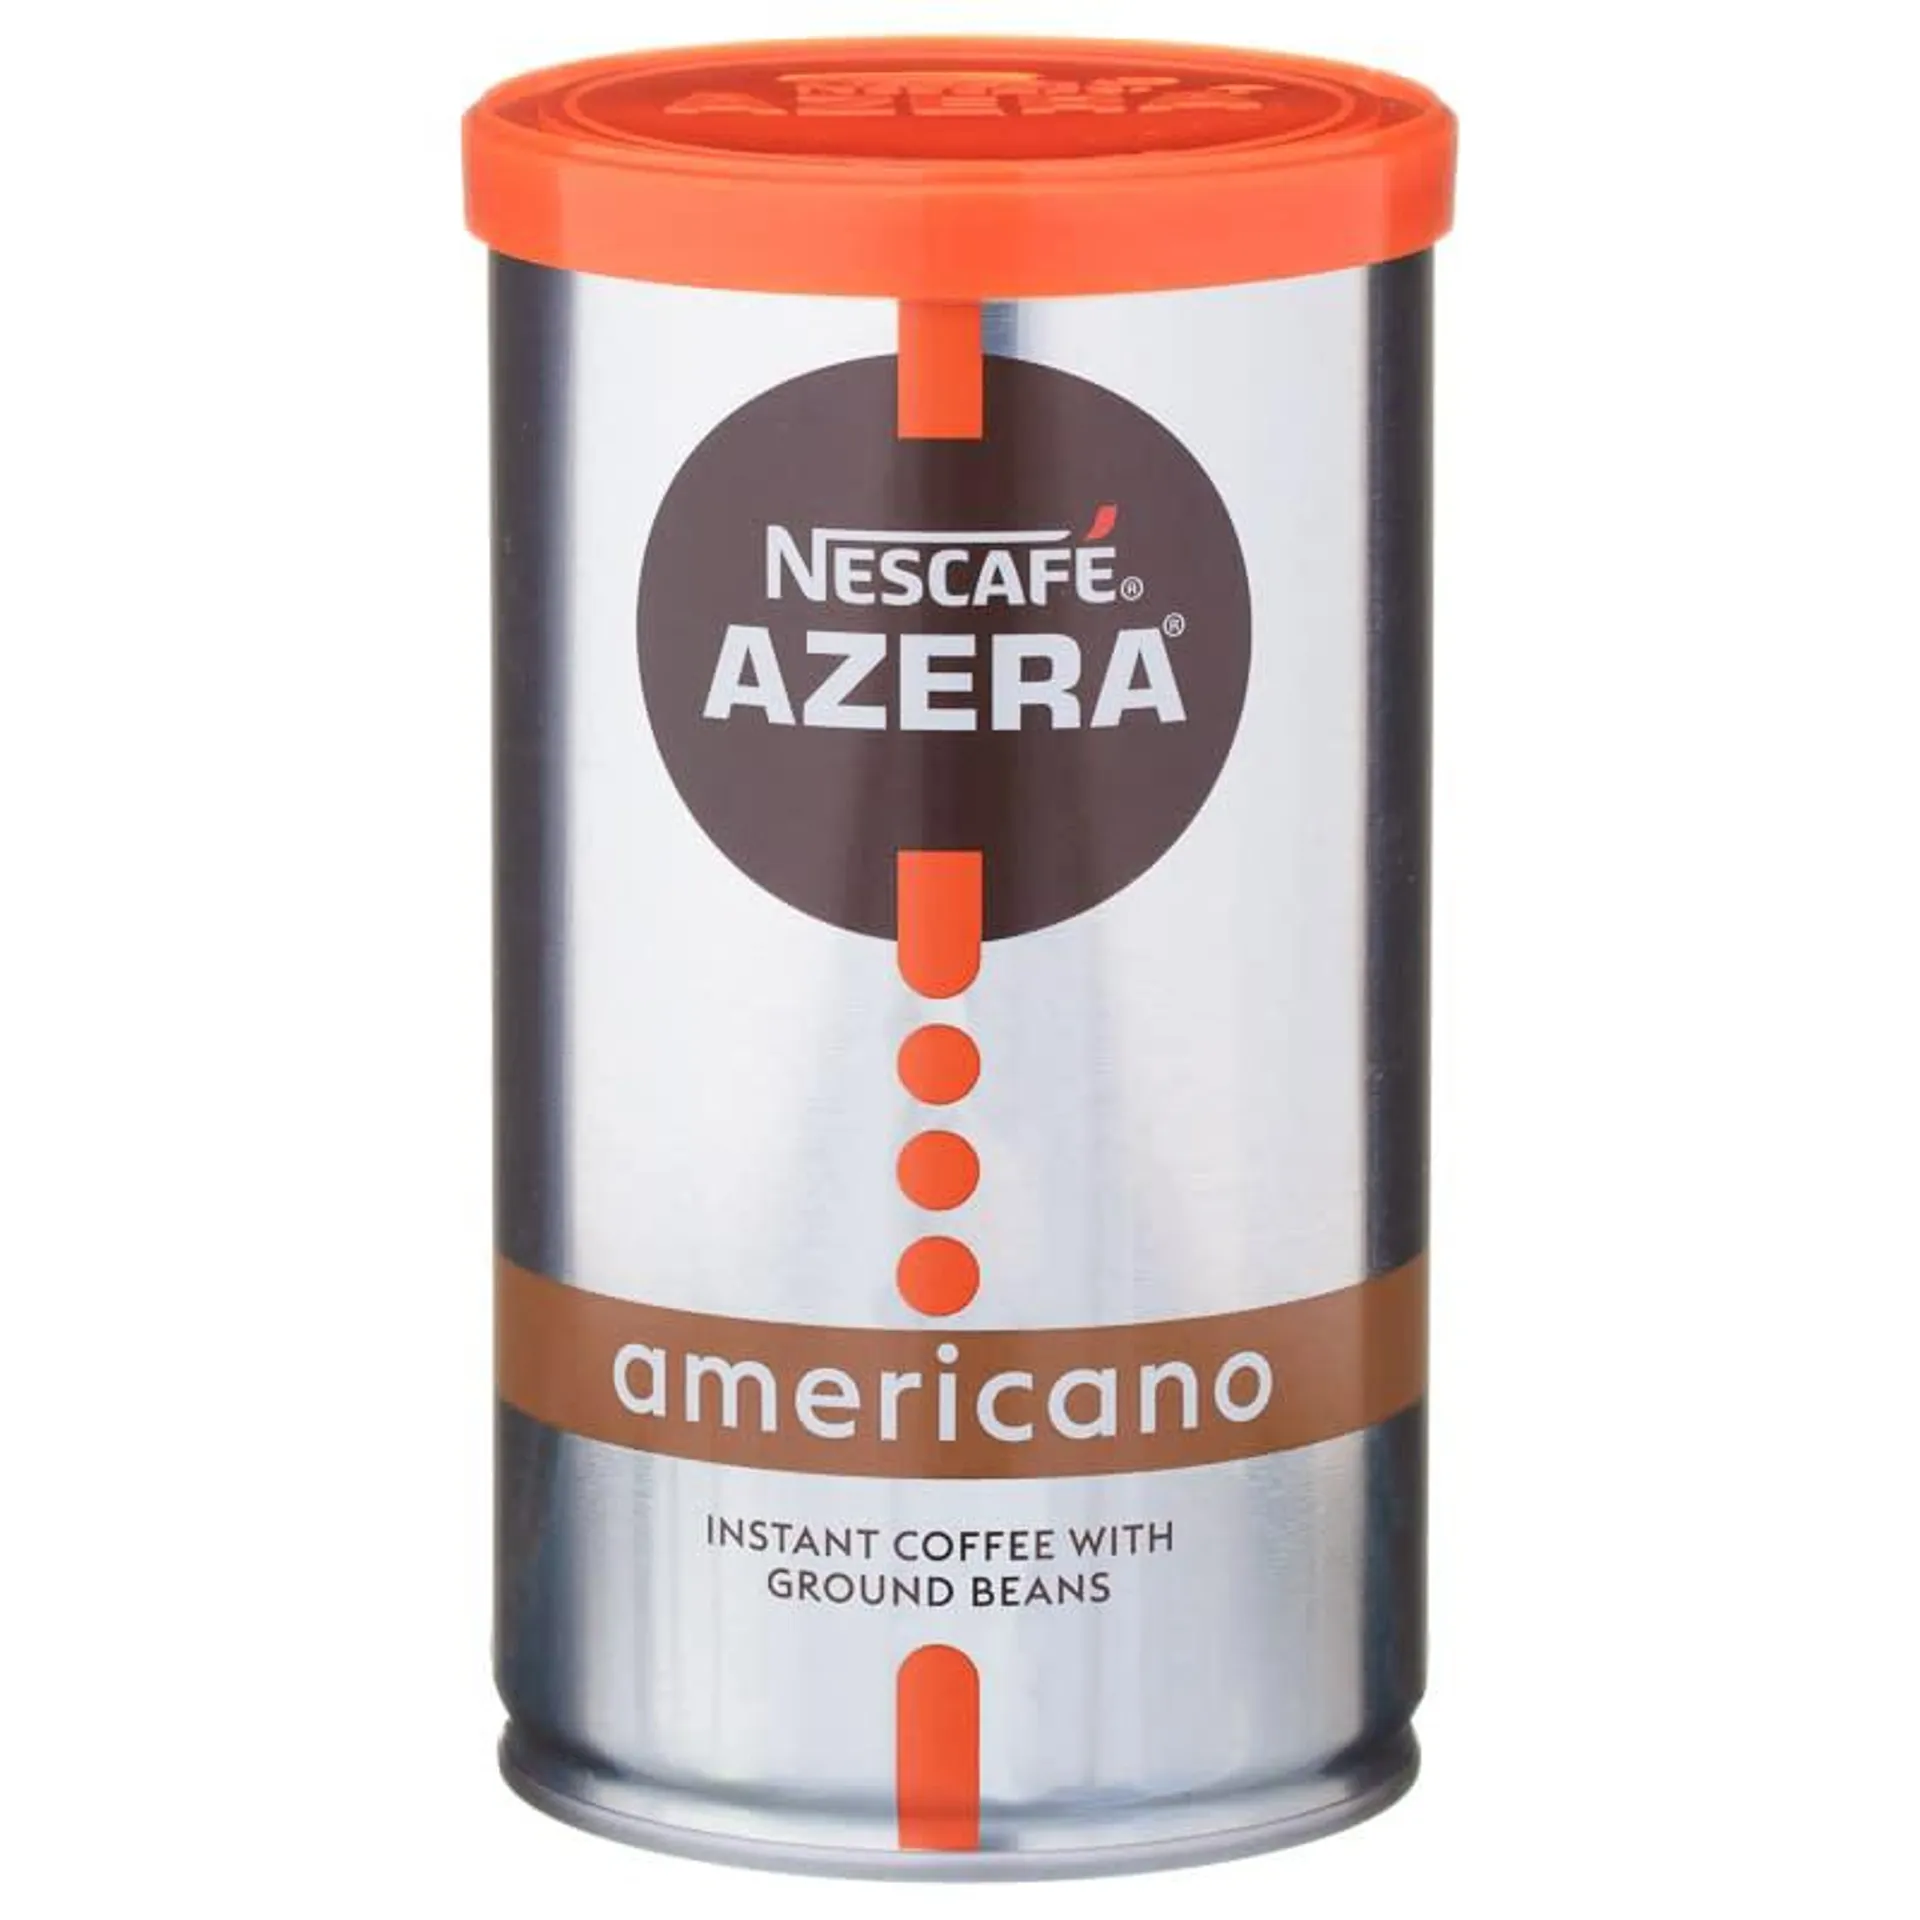 Nescafe Azera Americano Coffee 100g